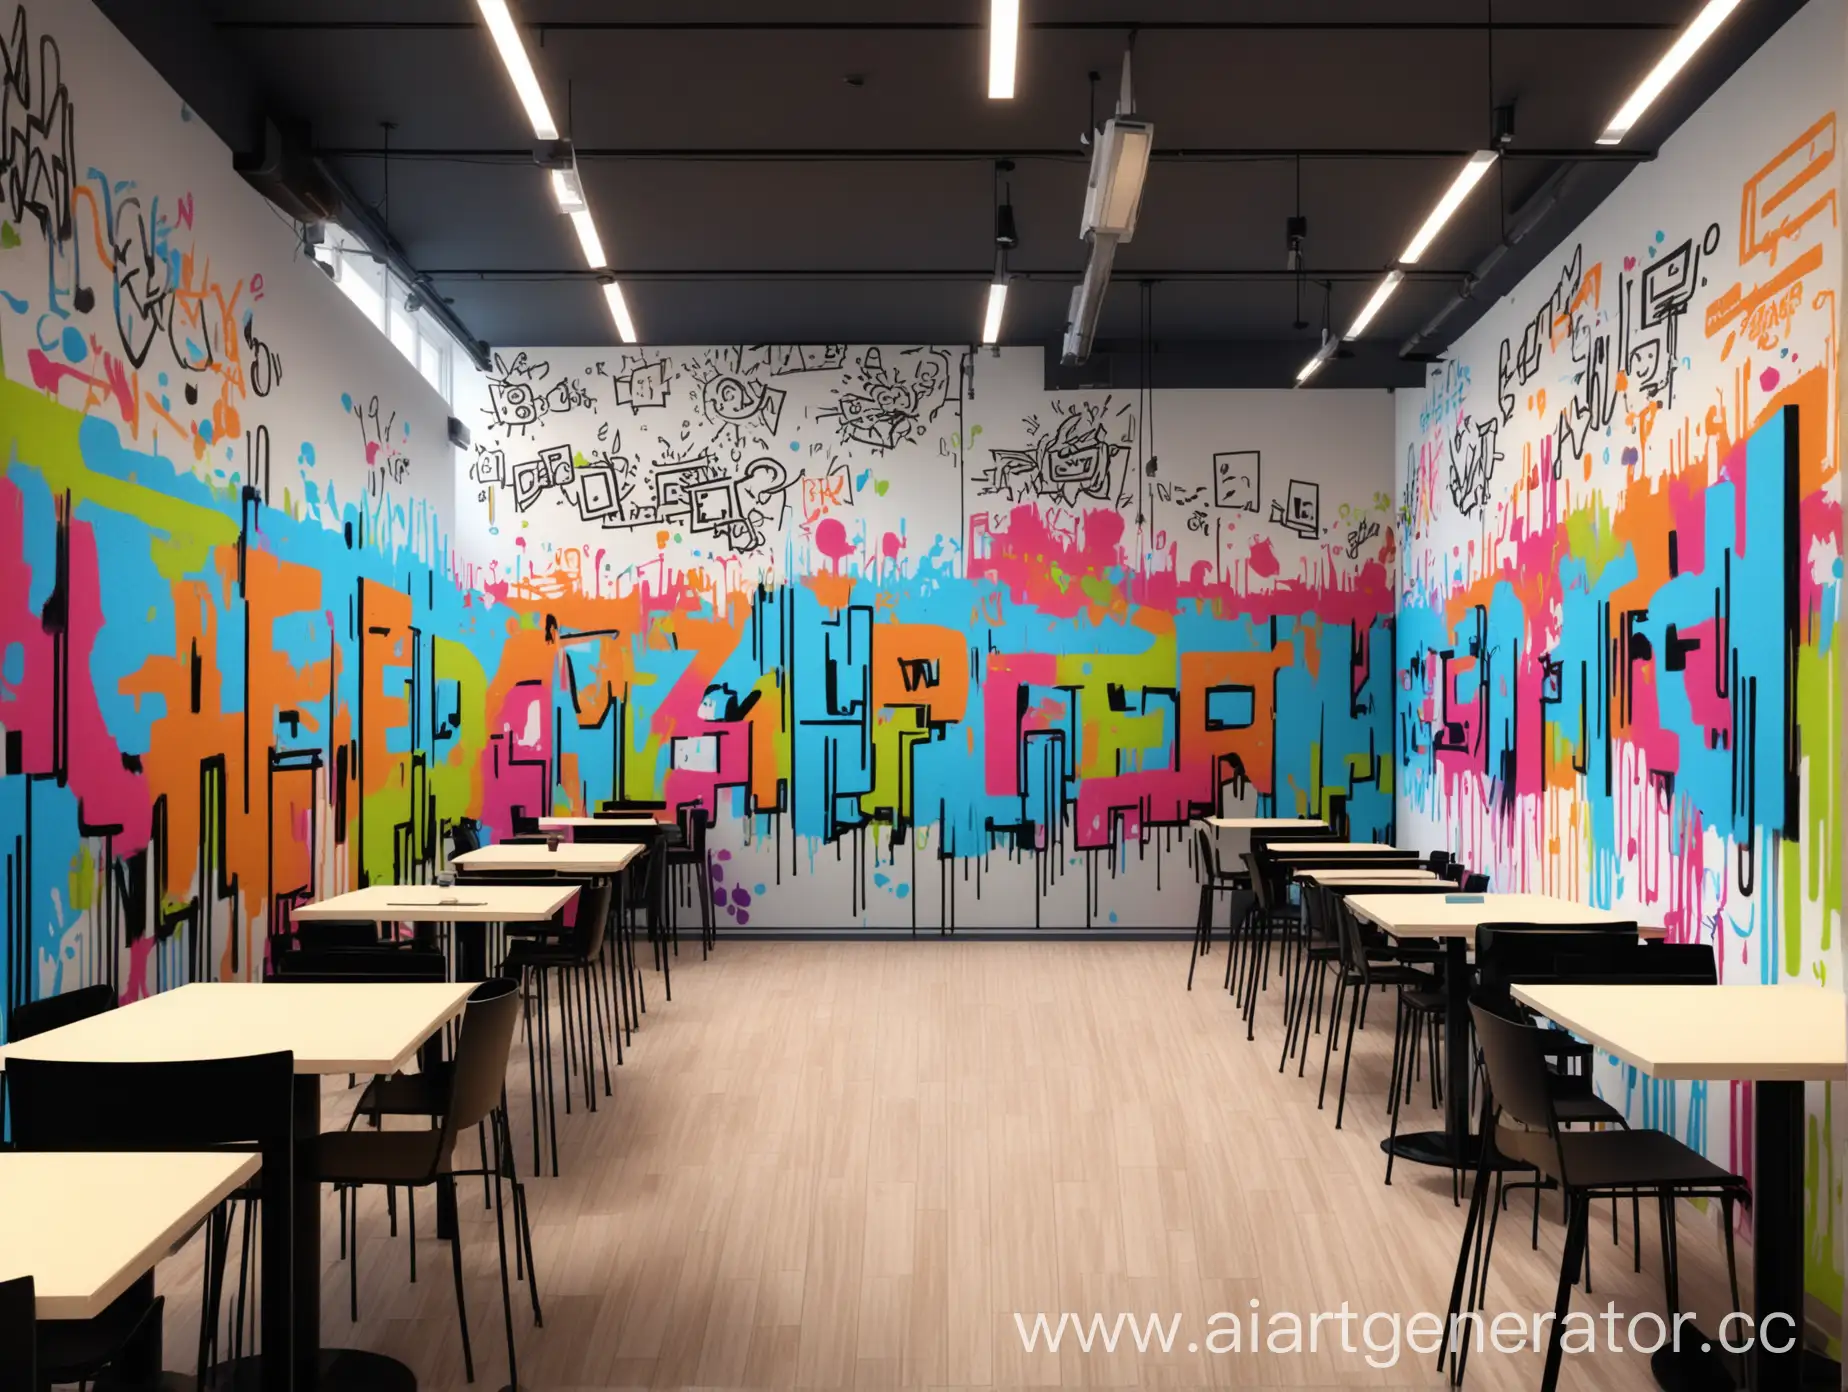 горизонтальное граффити на стене indoors, рисунок на стене в помещении, разноцветный и интересный сюжет, находится возле кафе или столовой, академия дизайна и программирования, яркий и современный стиль, дизайн, программирование